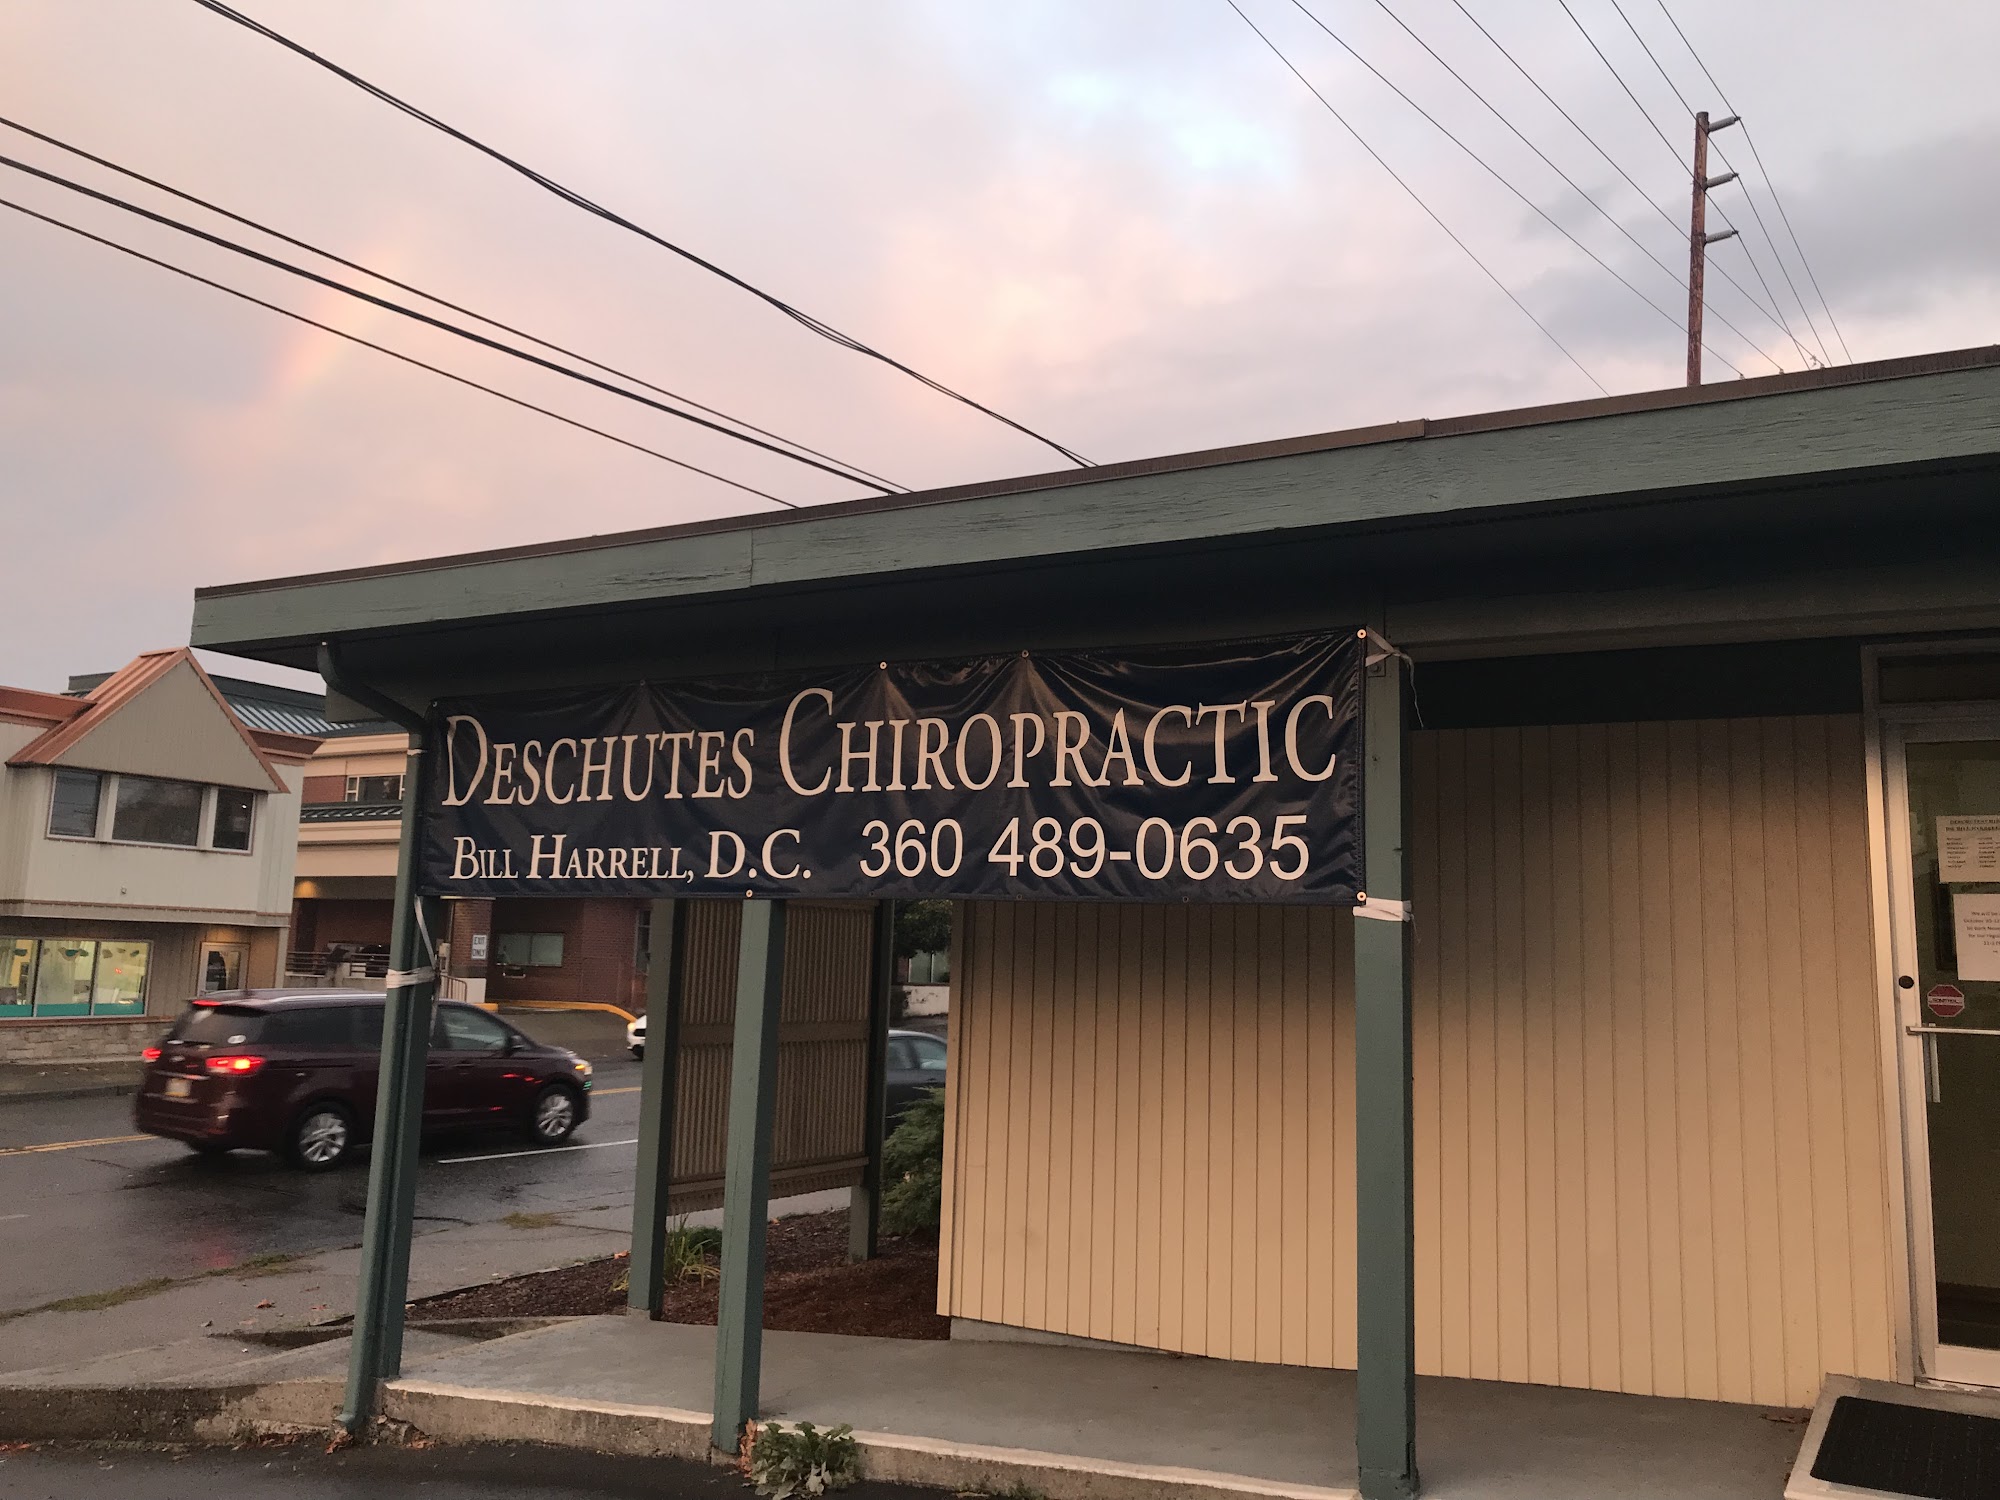 Deschutes Chiropractic